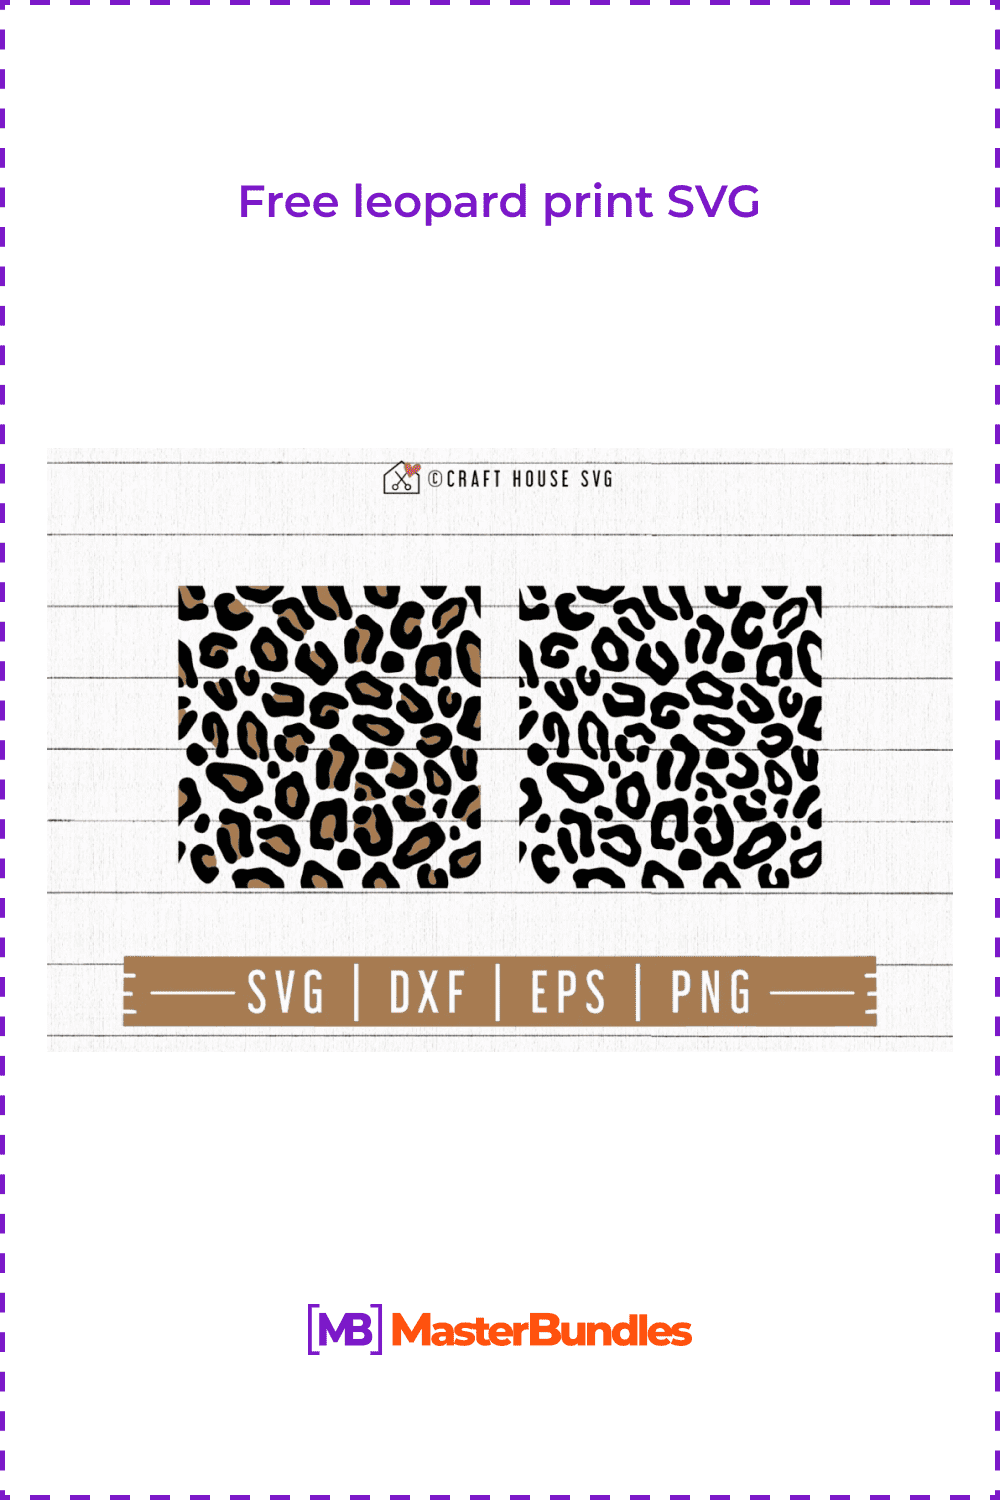 Free leopard print SVG.